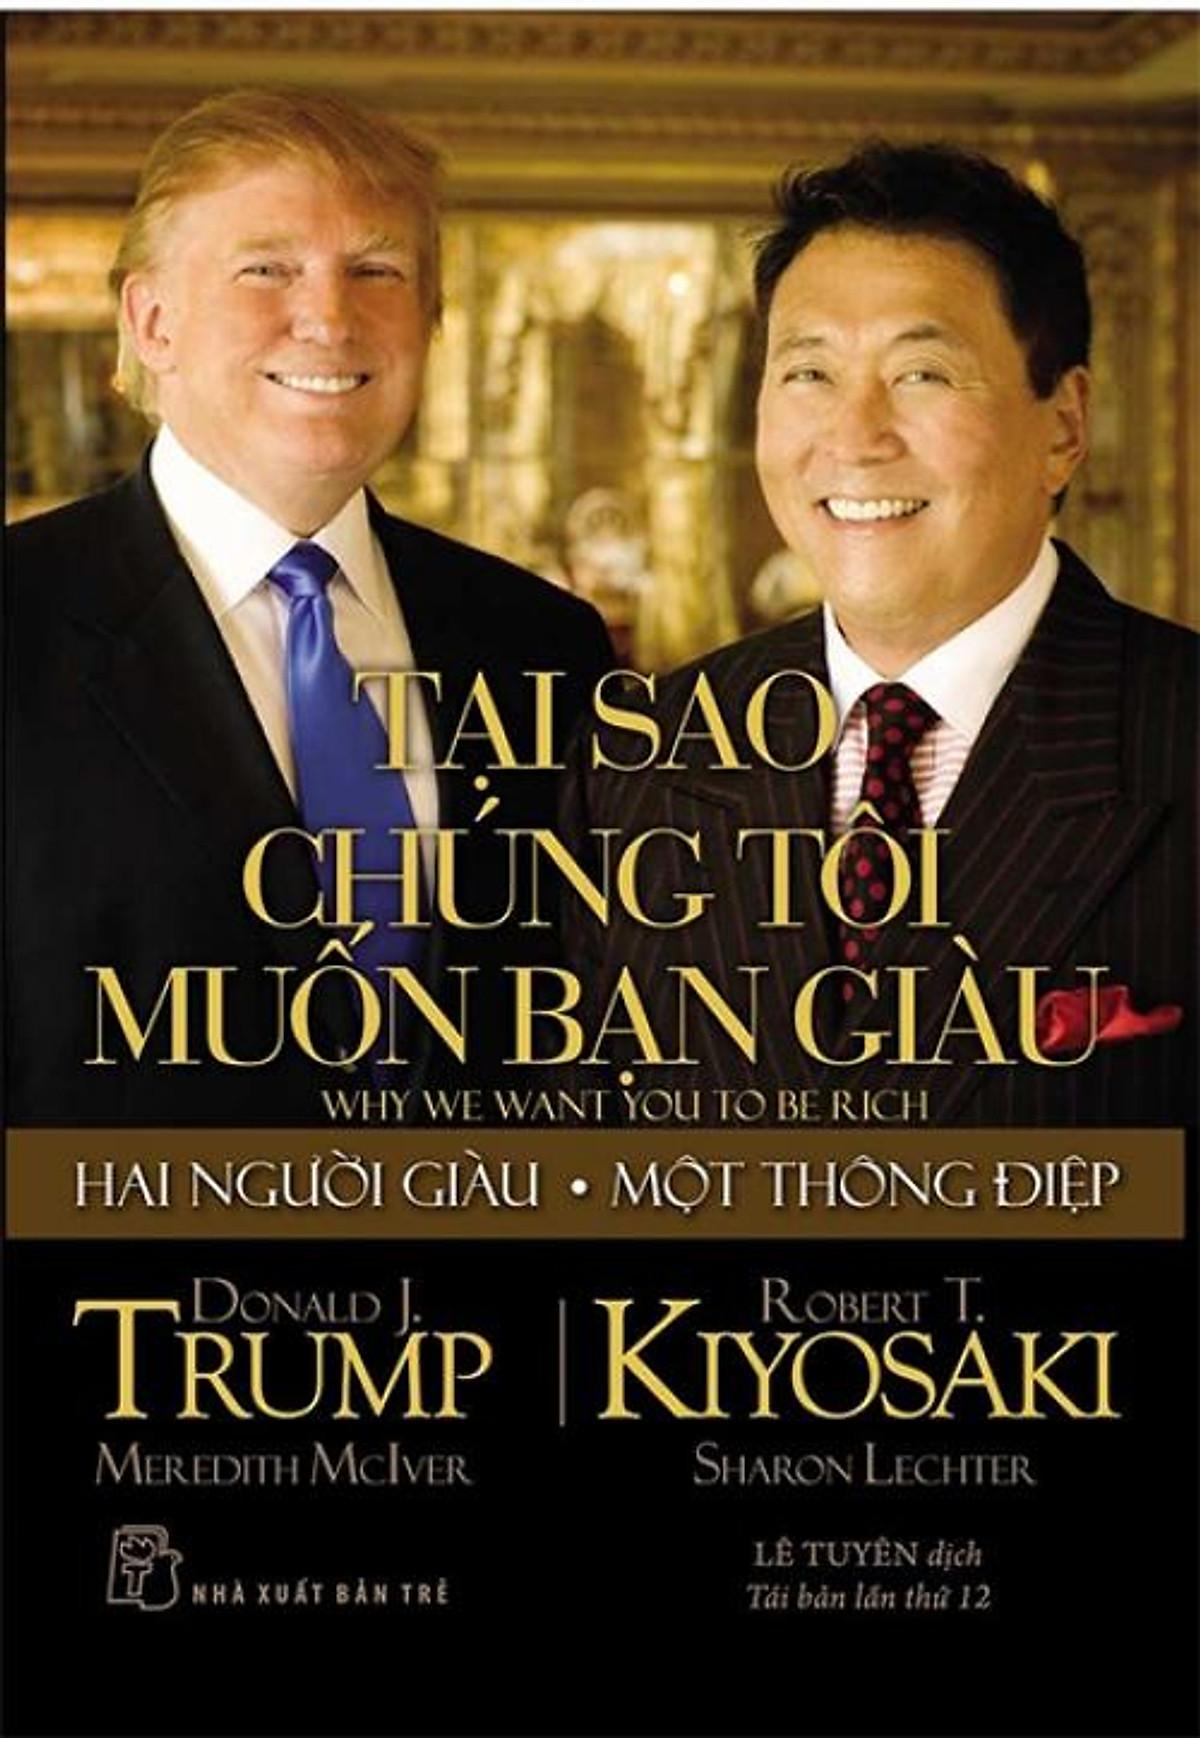 Tại Sao Chúng Tôi Muốn Bạn Giàu – Robert T. Kiyosaki, Donald Trump